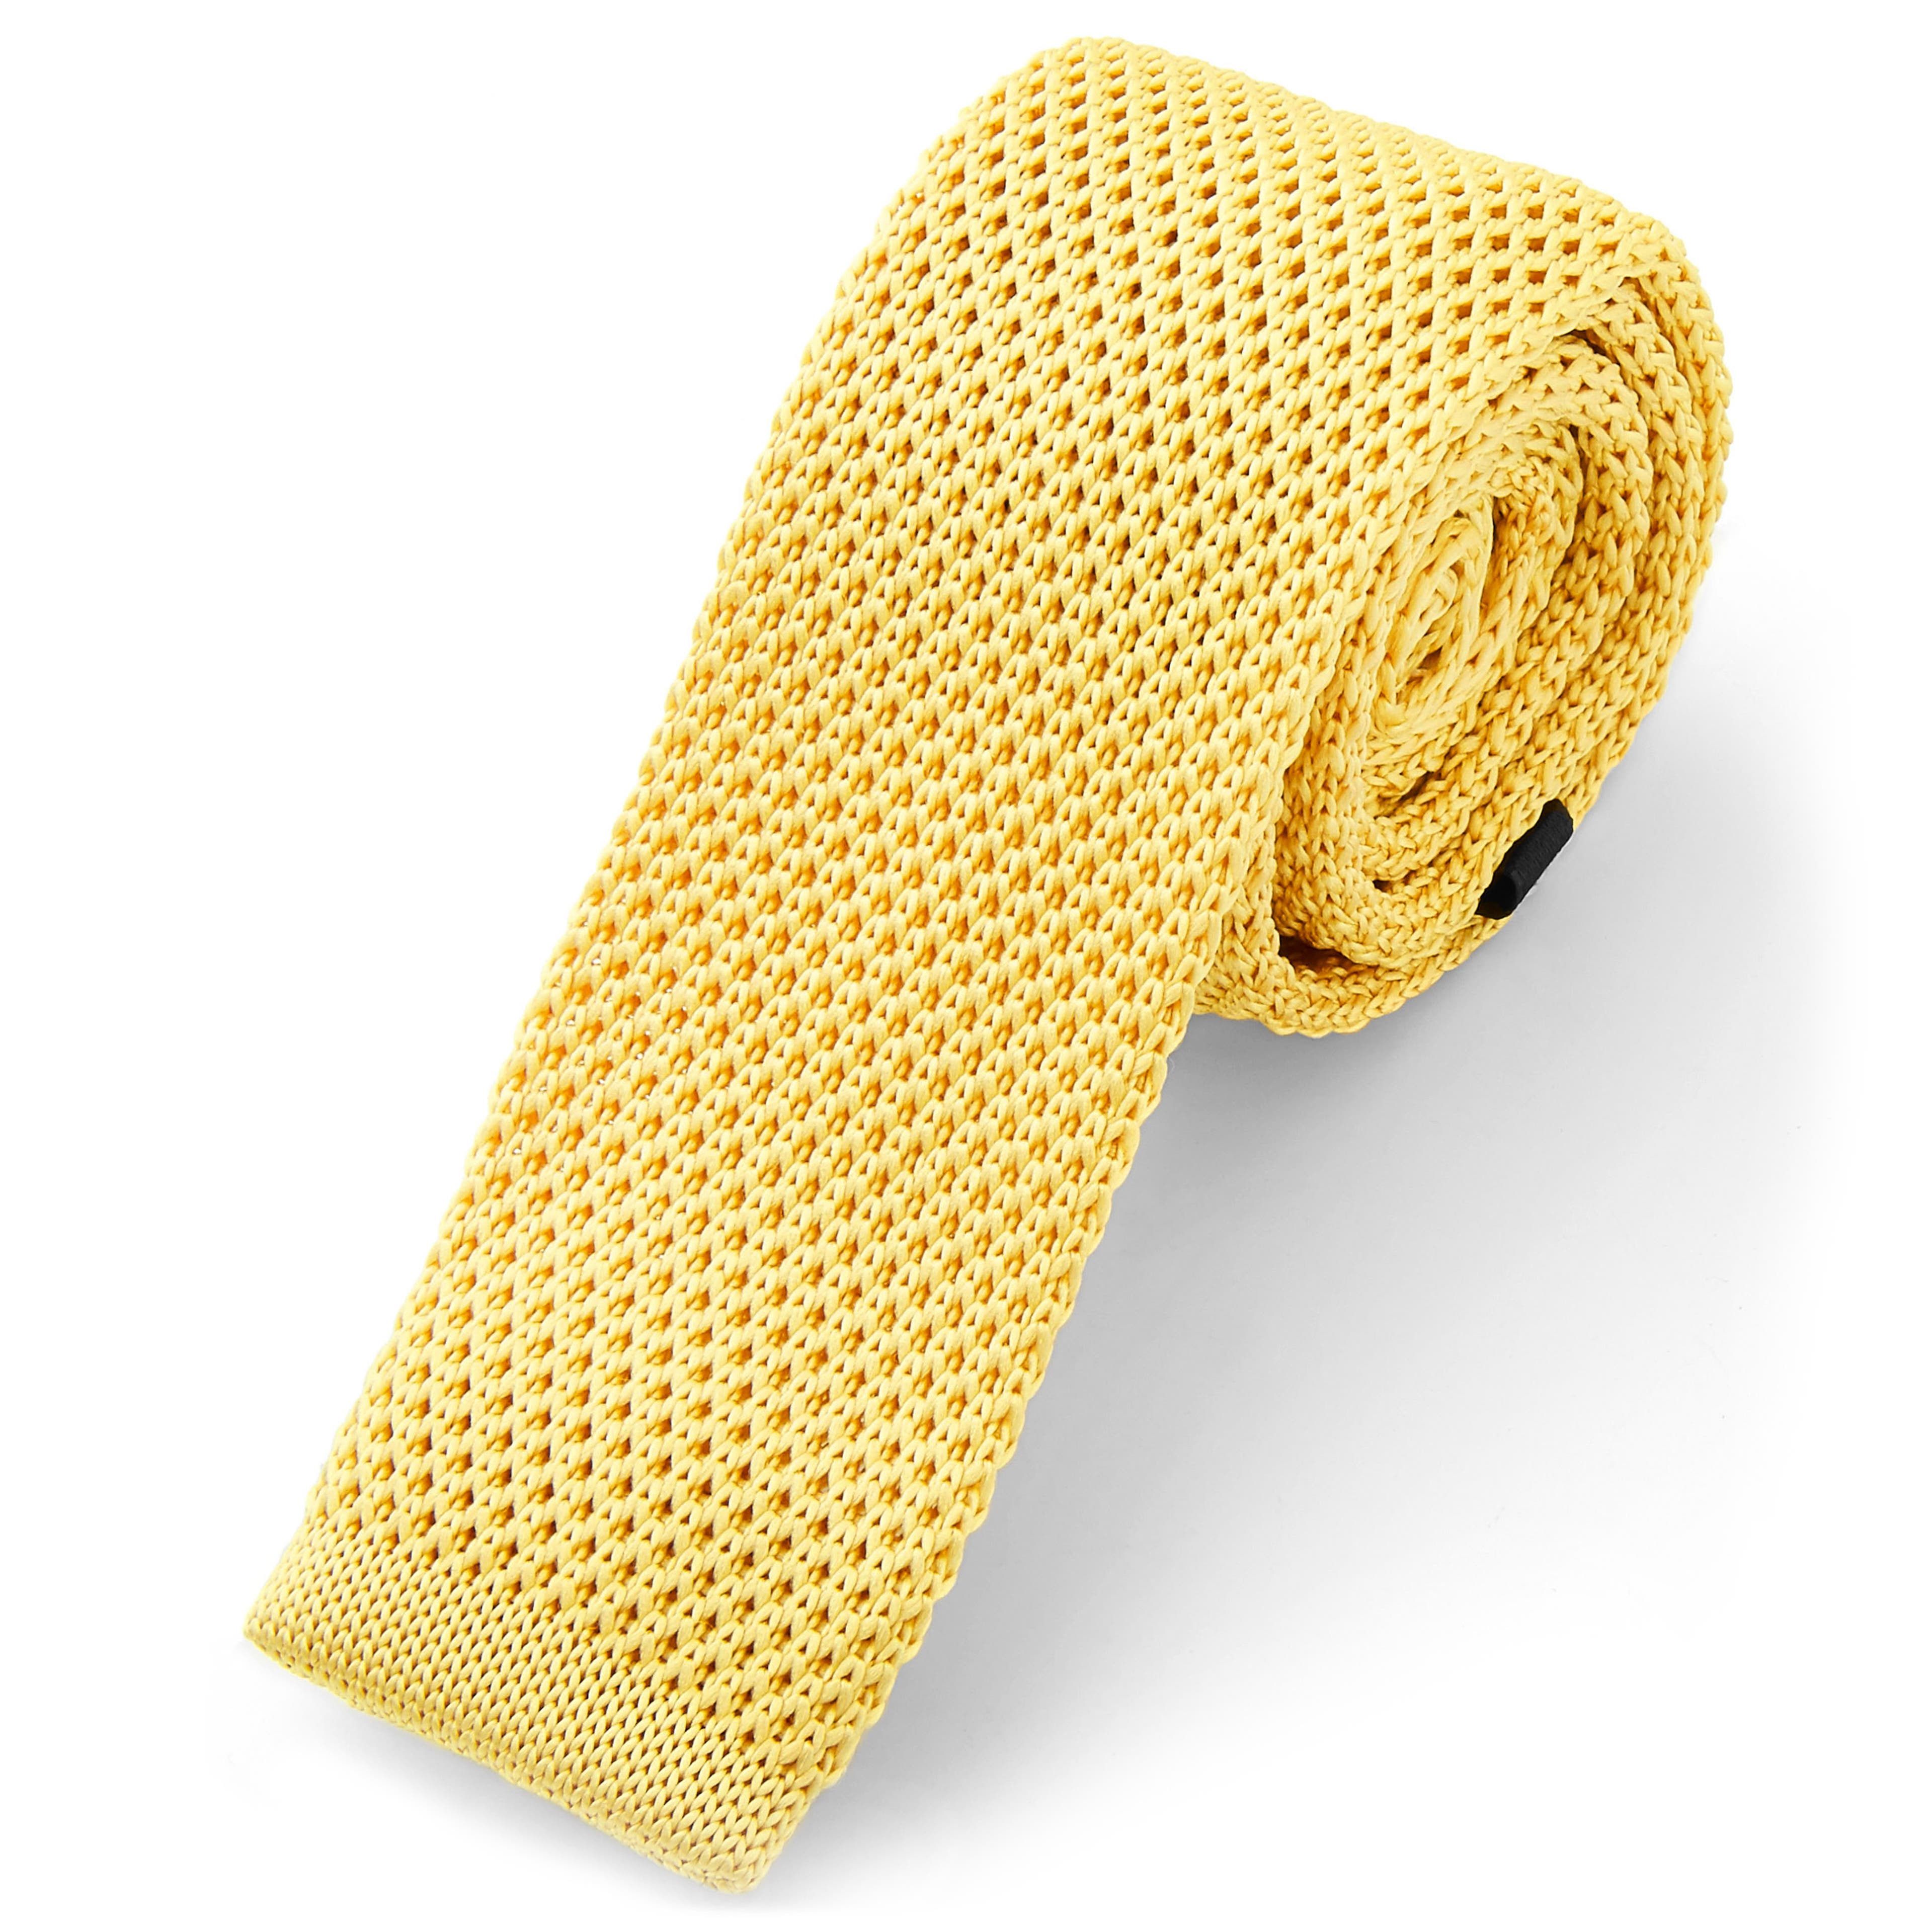 Corbata de punto amarilla con tonalidad dorada